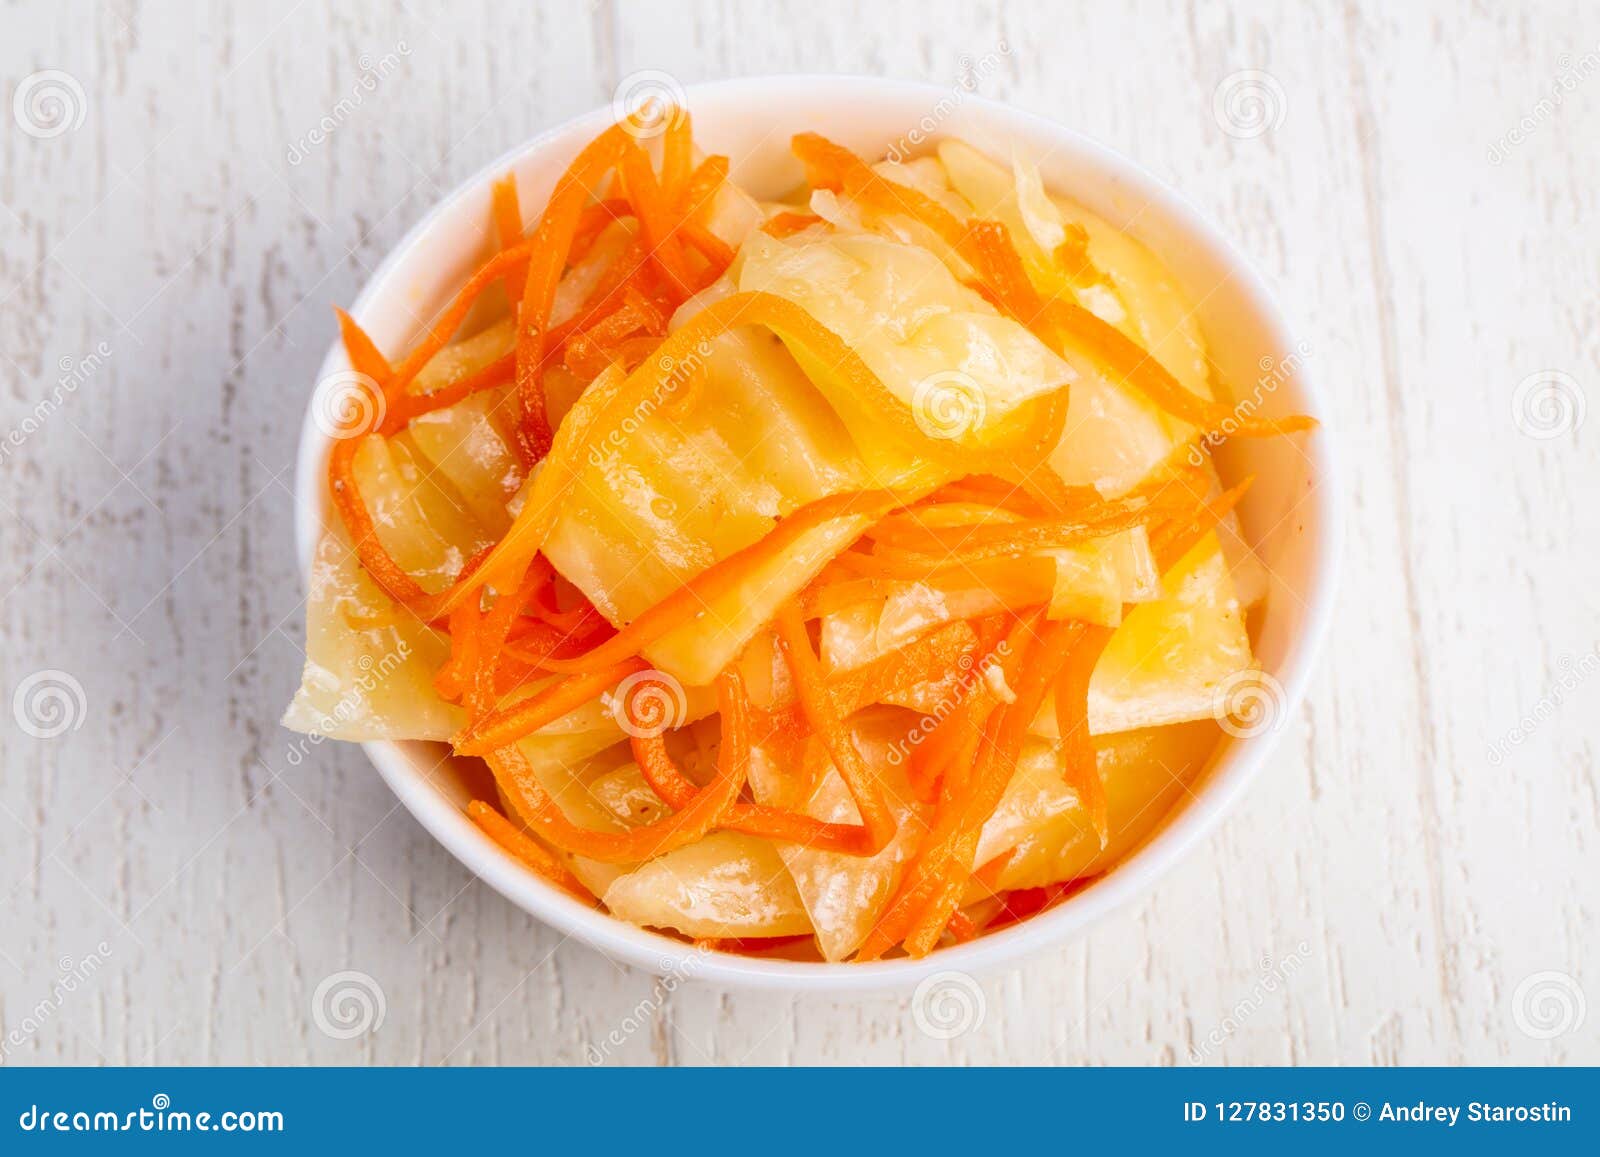 Капуста с шафраном. Капуста с морковкой по корейски. Корейская капуста желтая. Морковка по корейски, квашеная капуста. Желтая квашеная капуста.